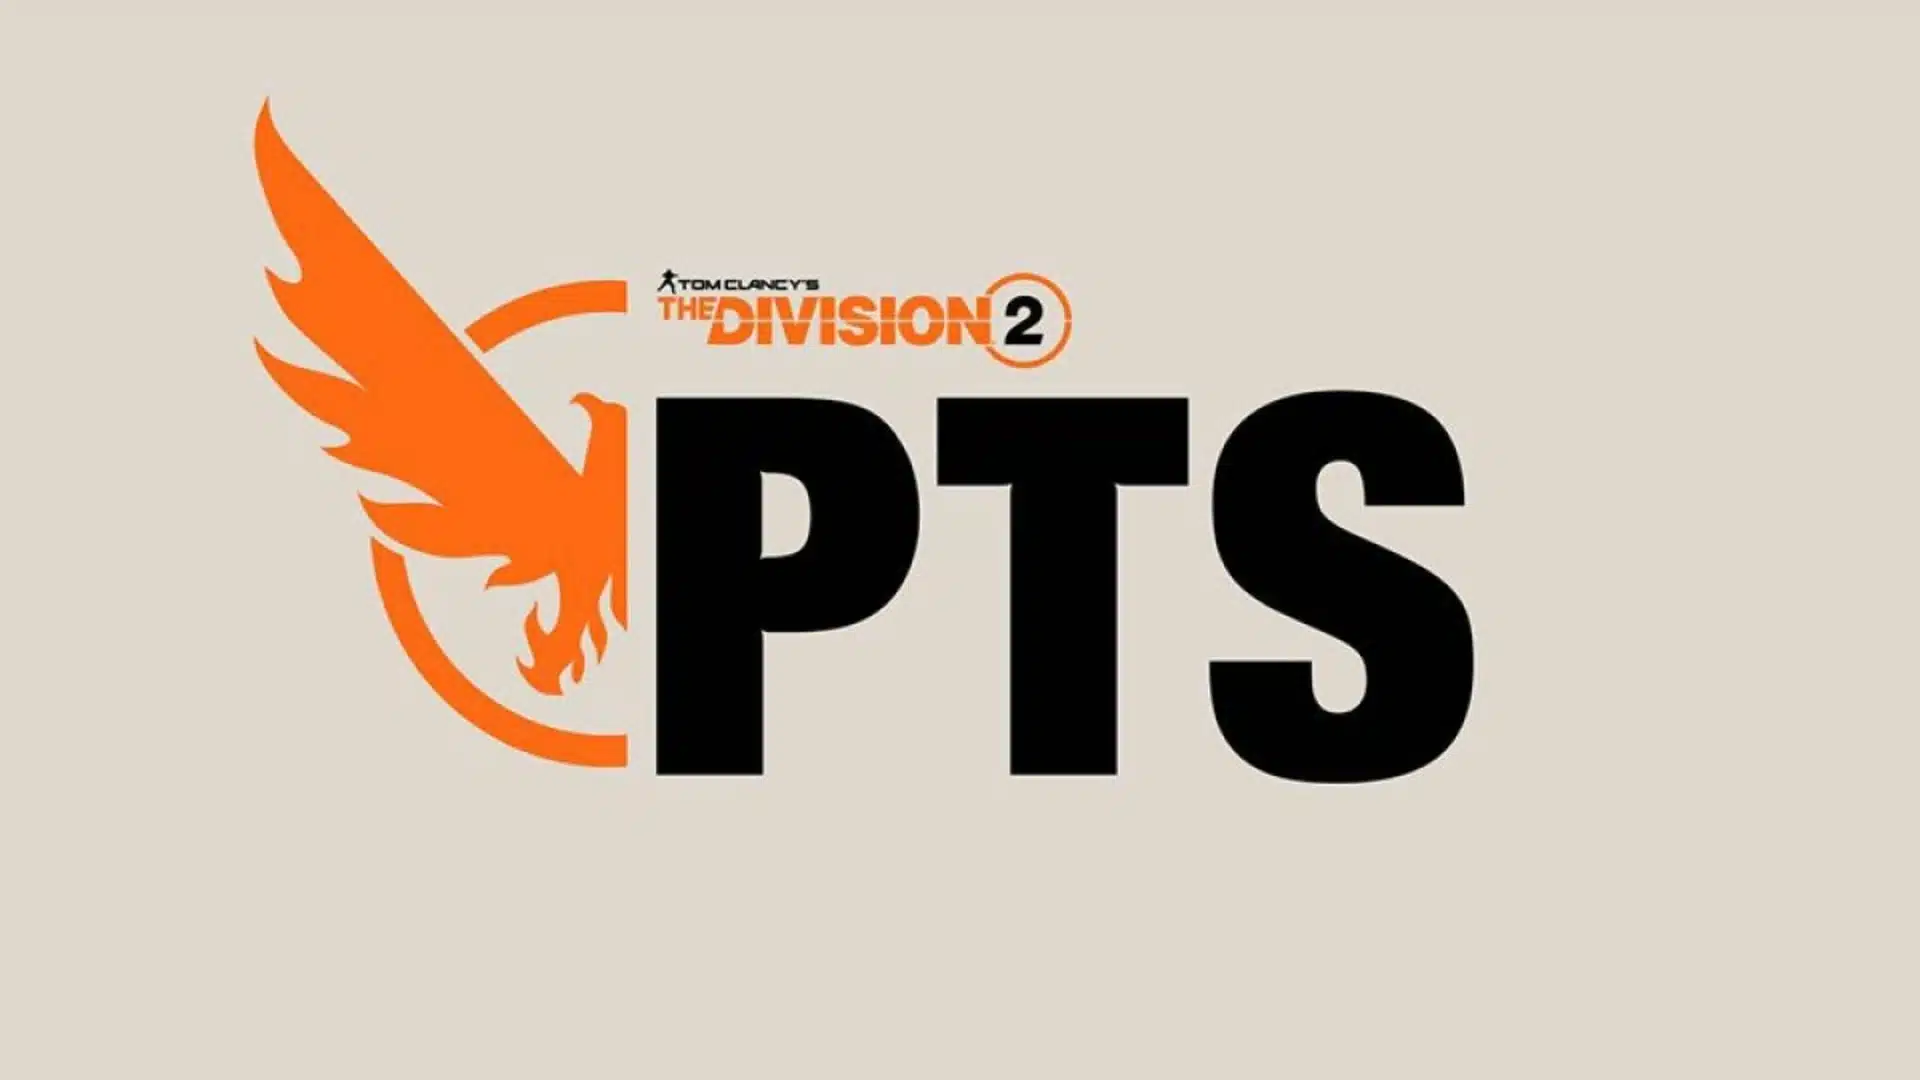 The Division 2 Yıl 6 Sezon 1 PTS Yama Notları, Program ve İndirme Boyutu Açıklandı